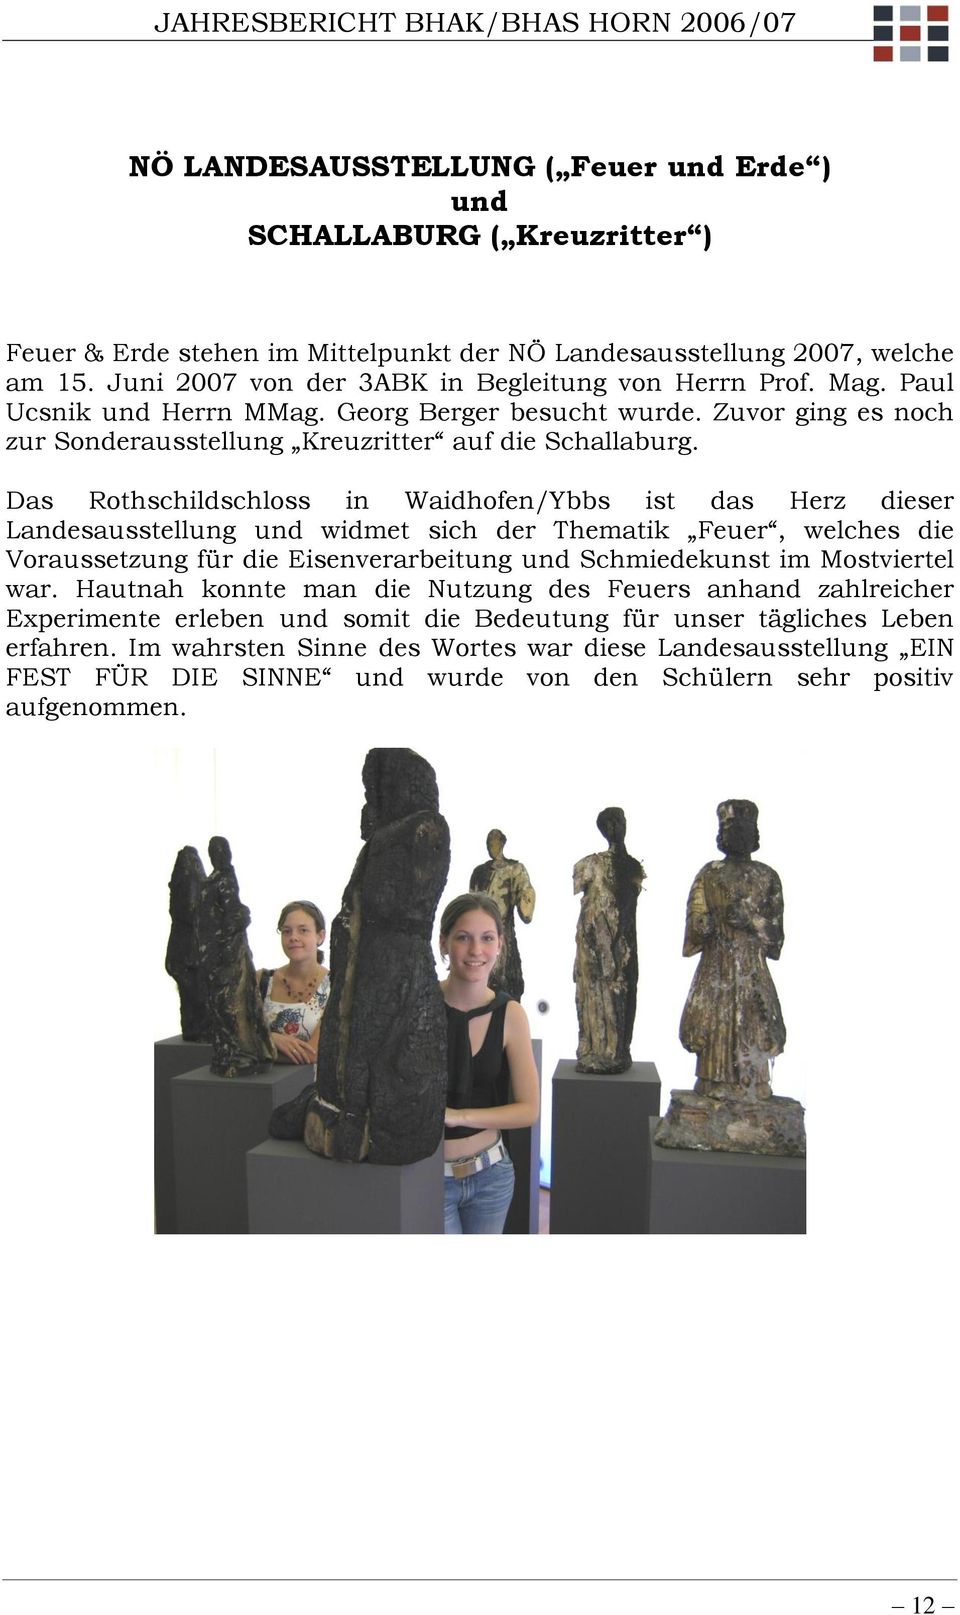 Das Rothschildschloss in Waidhofen/Ybbs ist das Herz dieser Landesausstellung und widmet sich der Thematik Feuer, welches die Voraussetzung für die Eisenverarbeitung und Schmiedekunst im Mostviertel